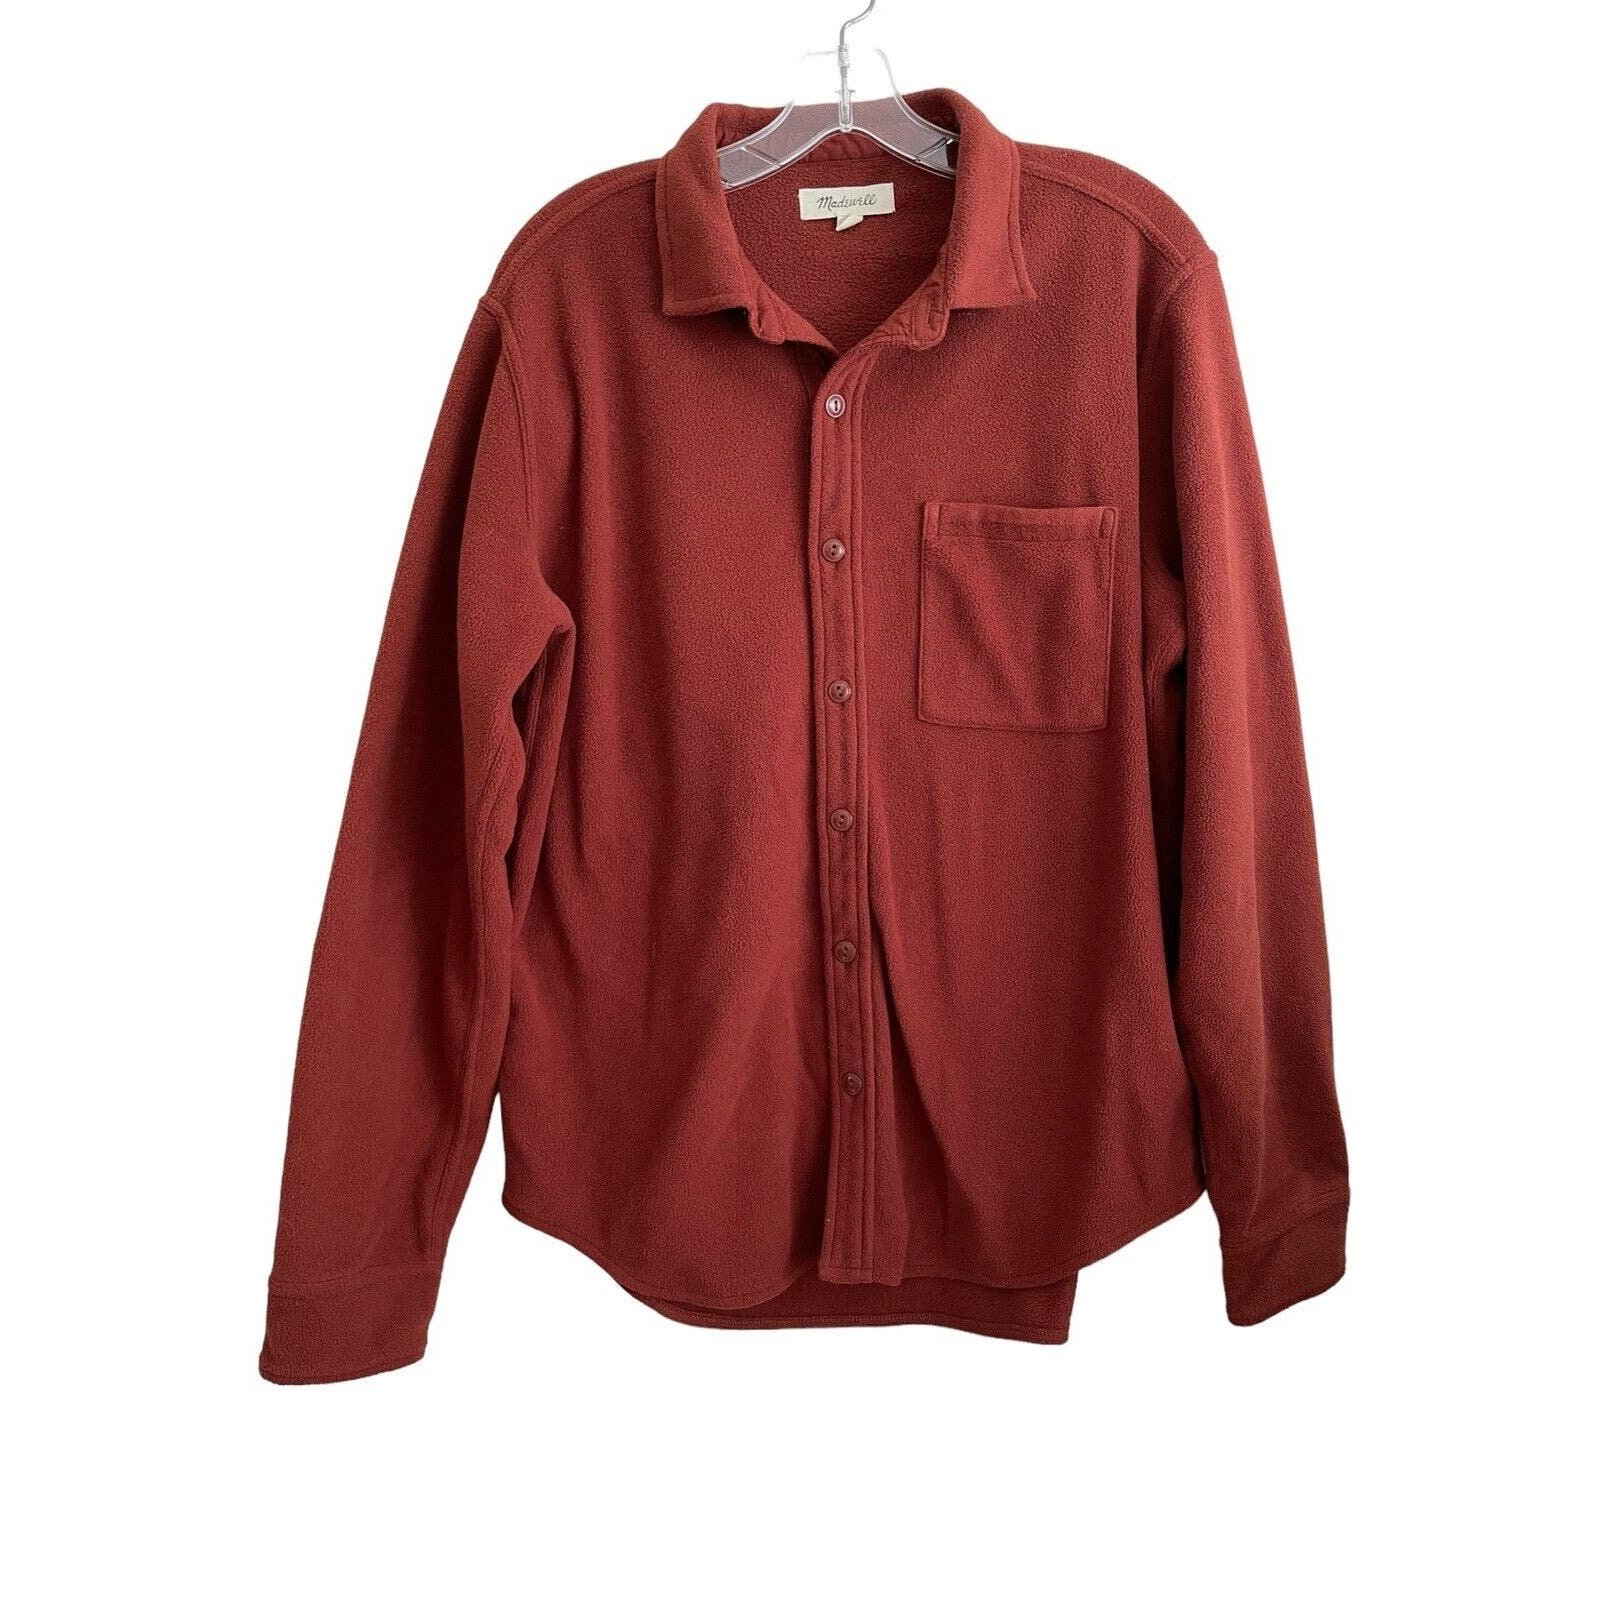 Madewell Fleece Button Down Shirt Shacket Jacket Women Size Medium Brown Relaxed P2jJVmN6w